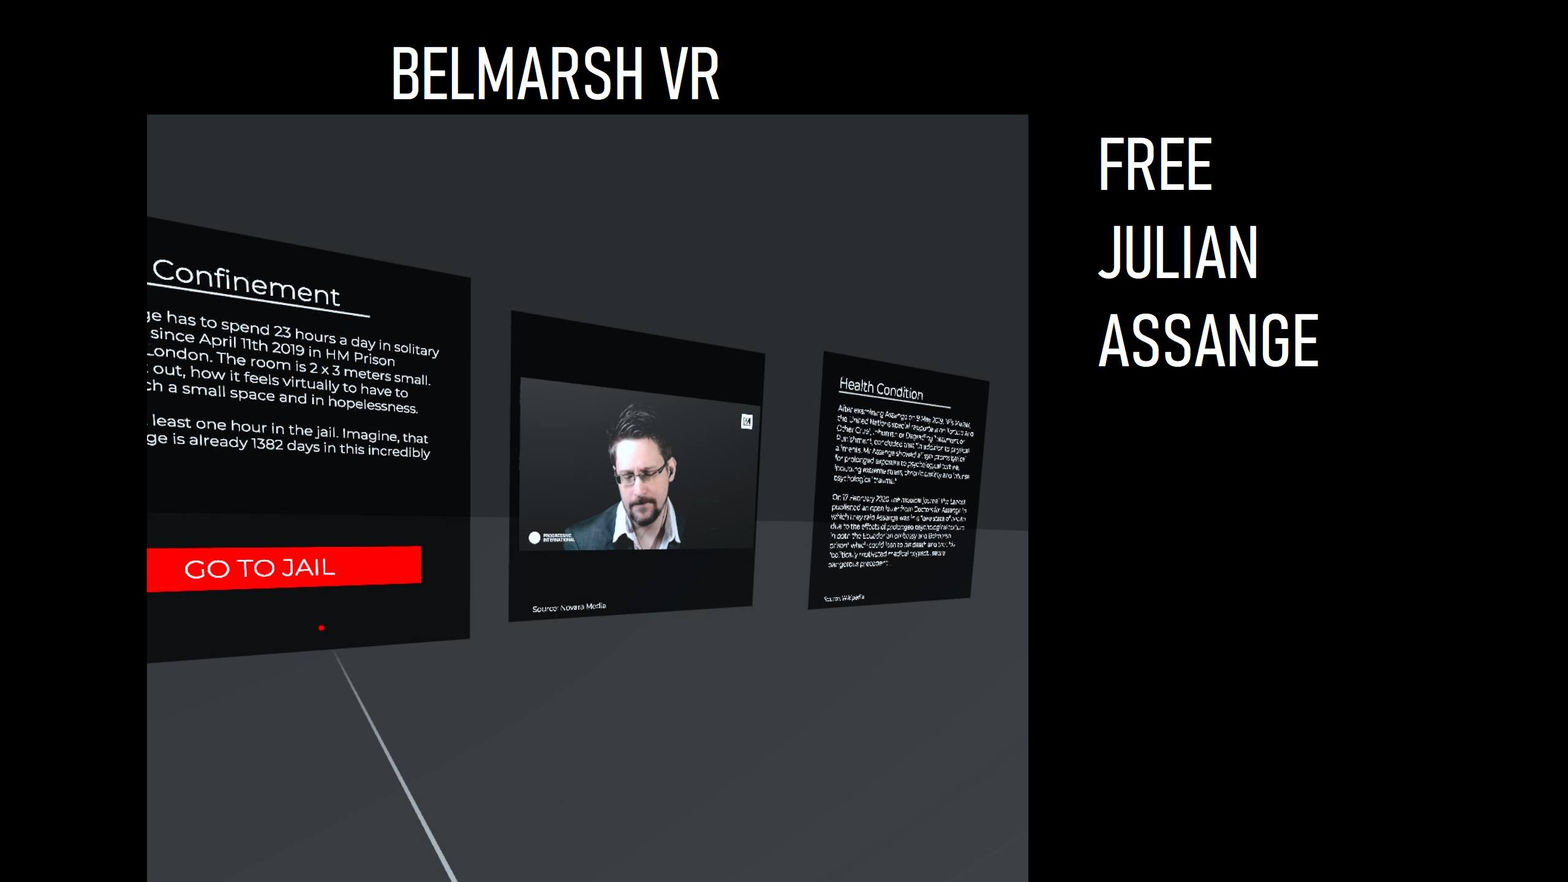 Belmarsh VR